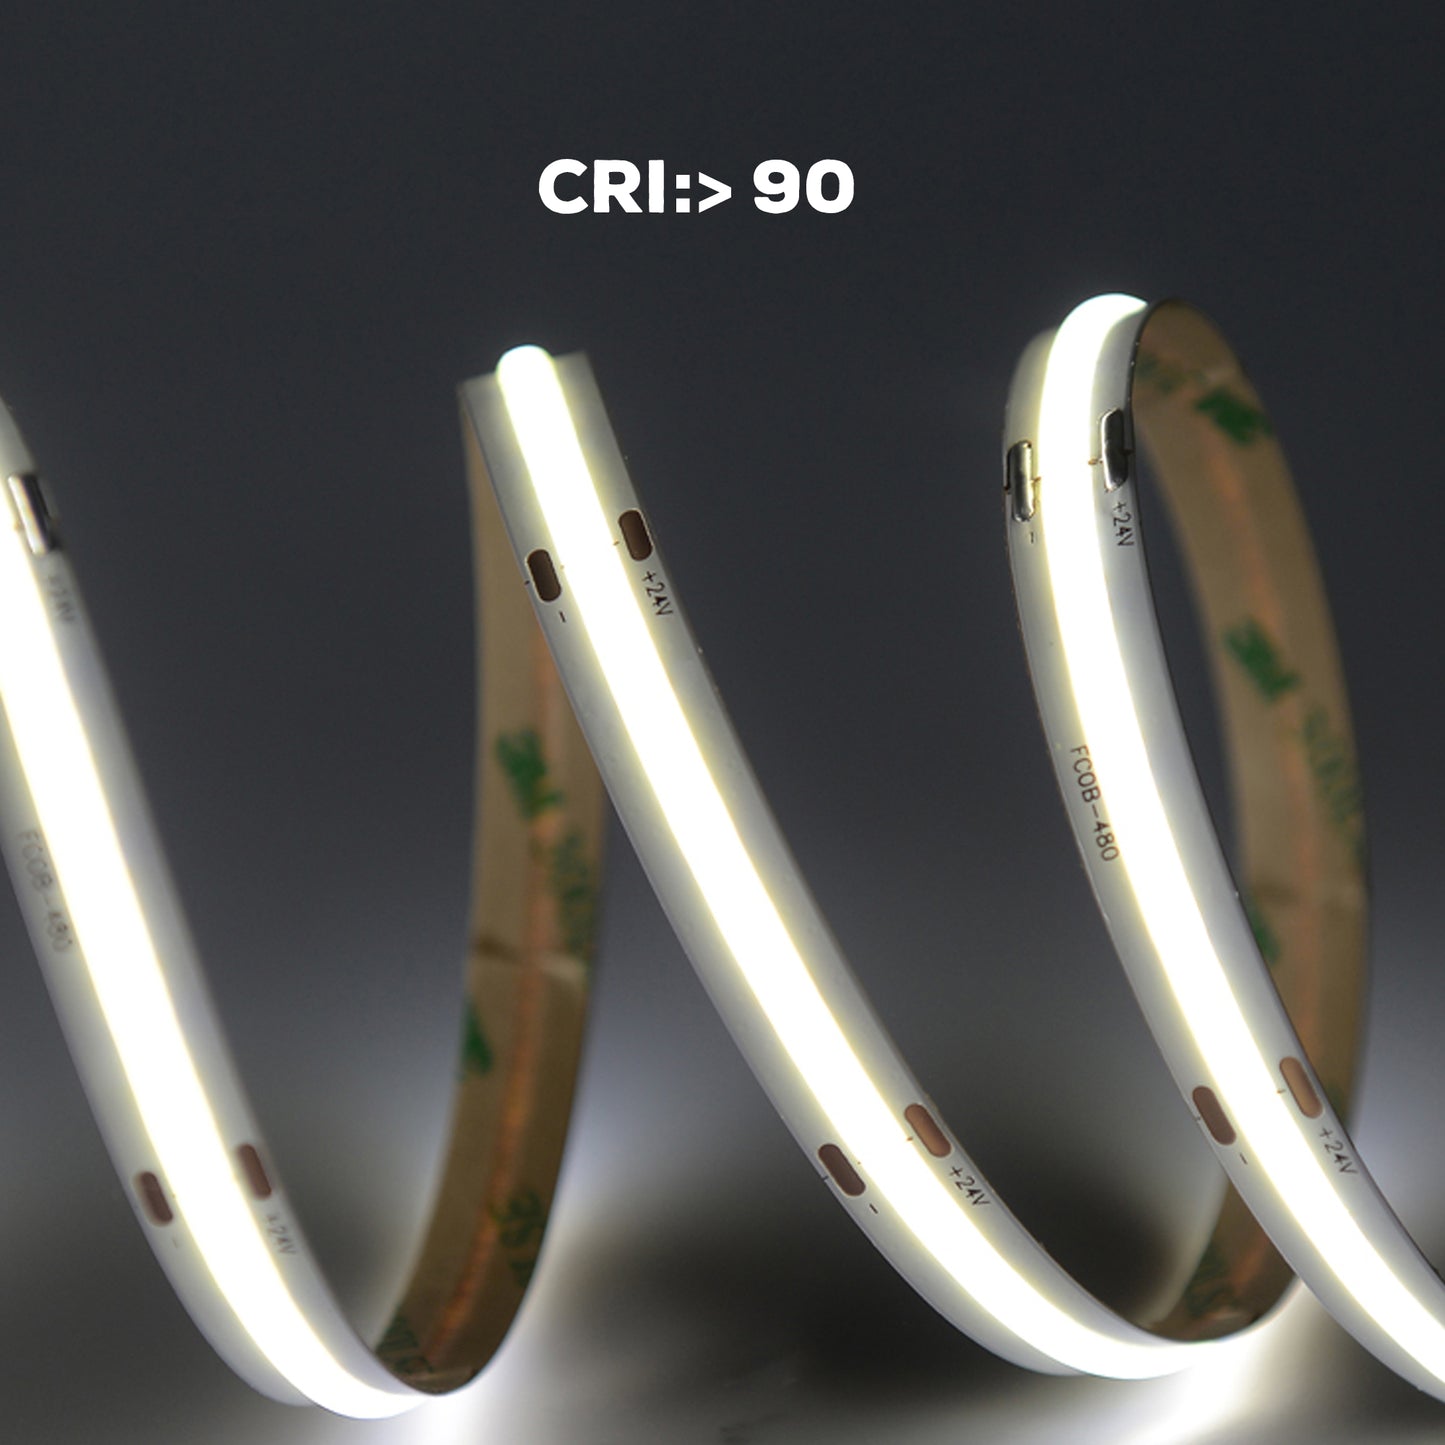 CCT LED Strip Light Cob 2700K-6500K